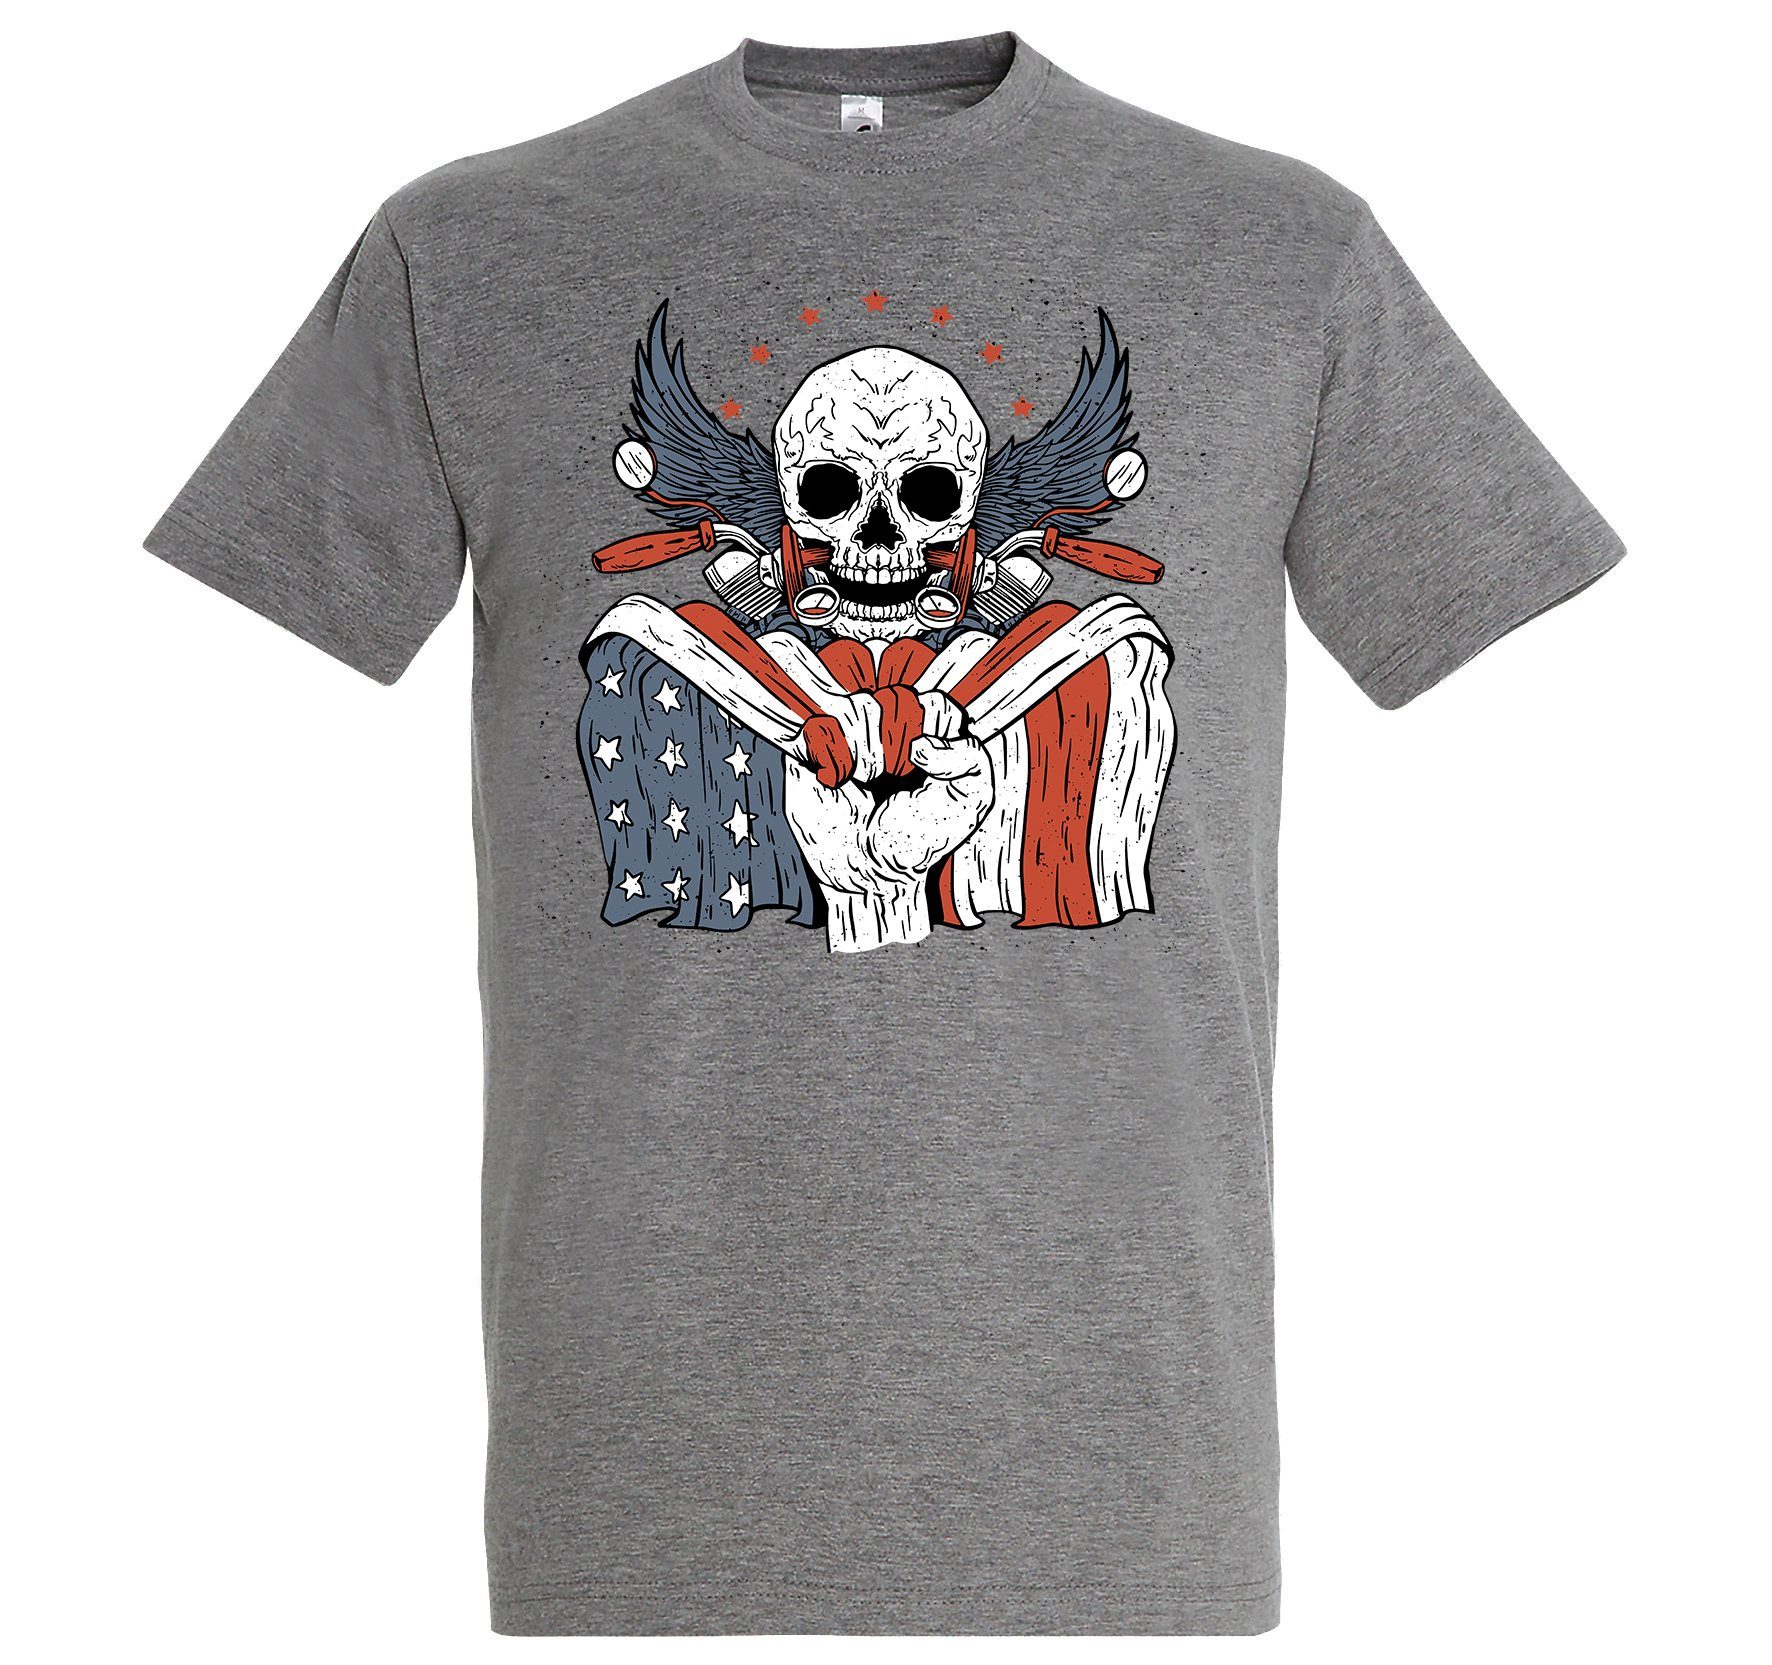 T-Shirt Designz Herren Biker USA Grau lustigem Skull Logo Aufdruck mit Youth Print-Shirt